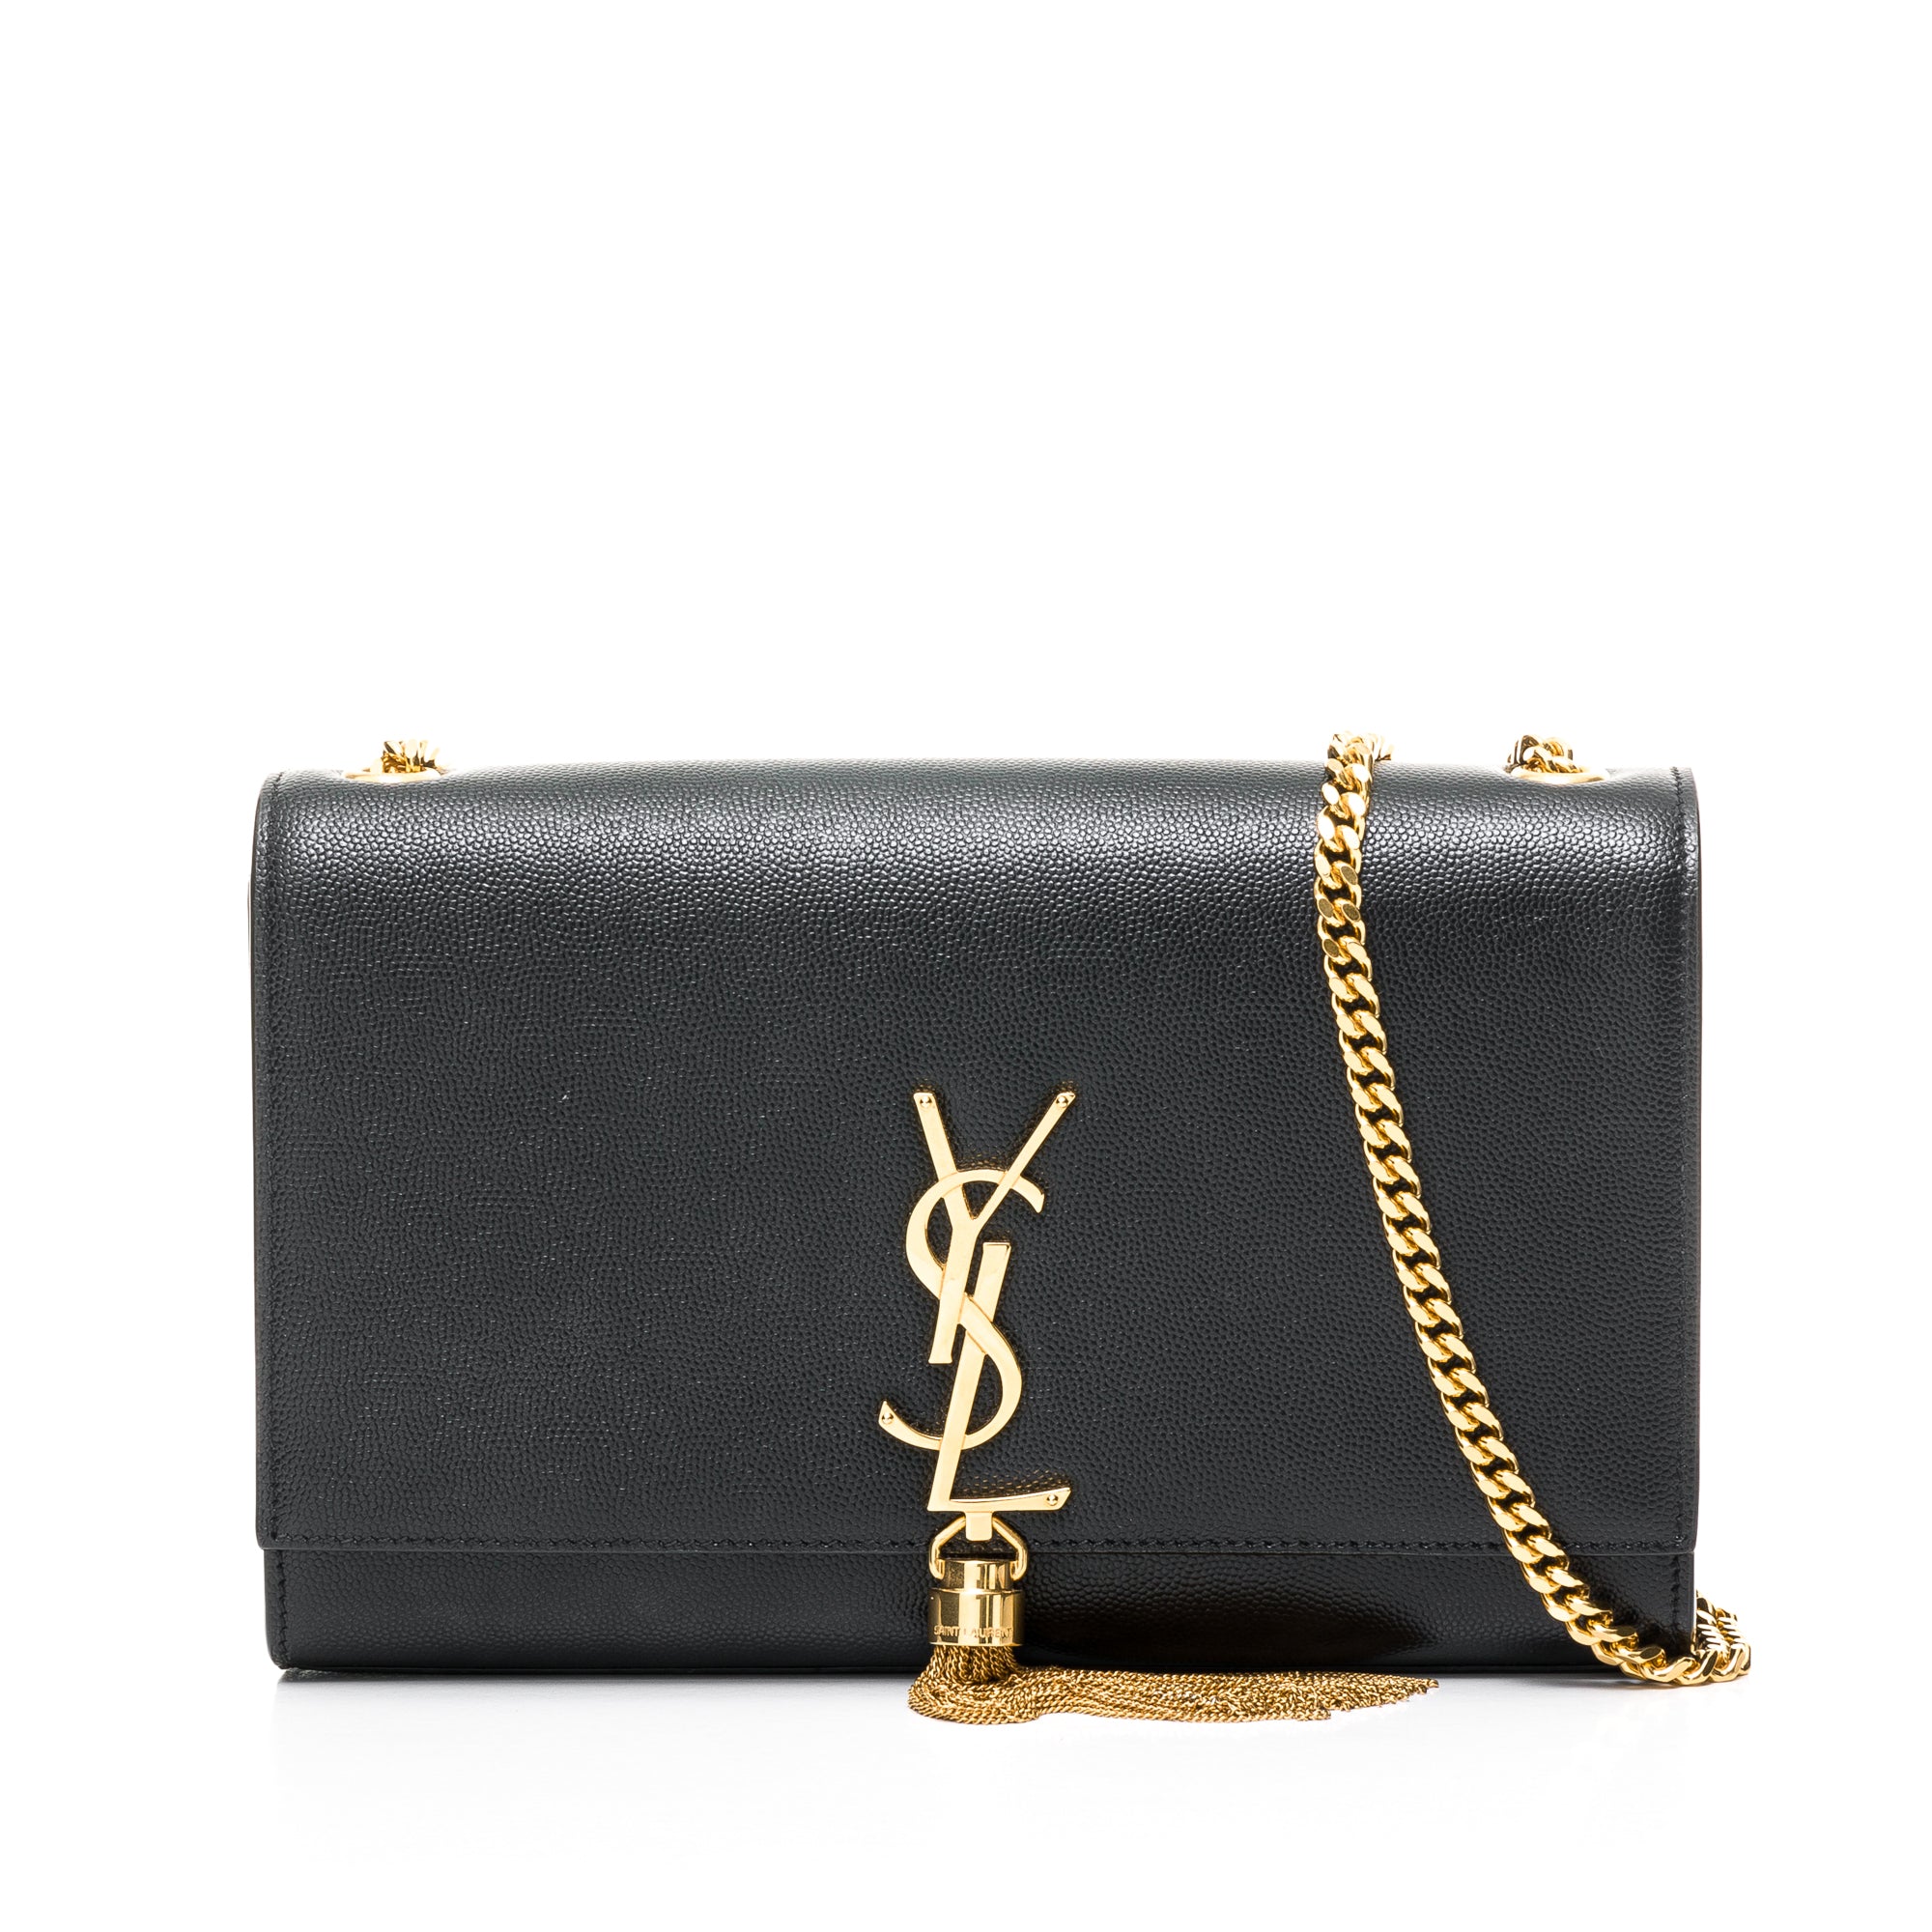 YSL Saint Laurent Cassandre Matelasse Wallet on Chain crossbody Bag Box  Receipt